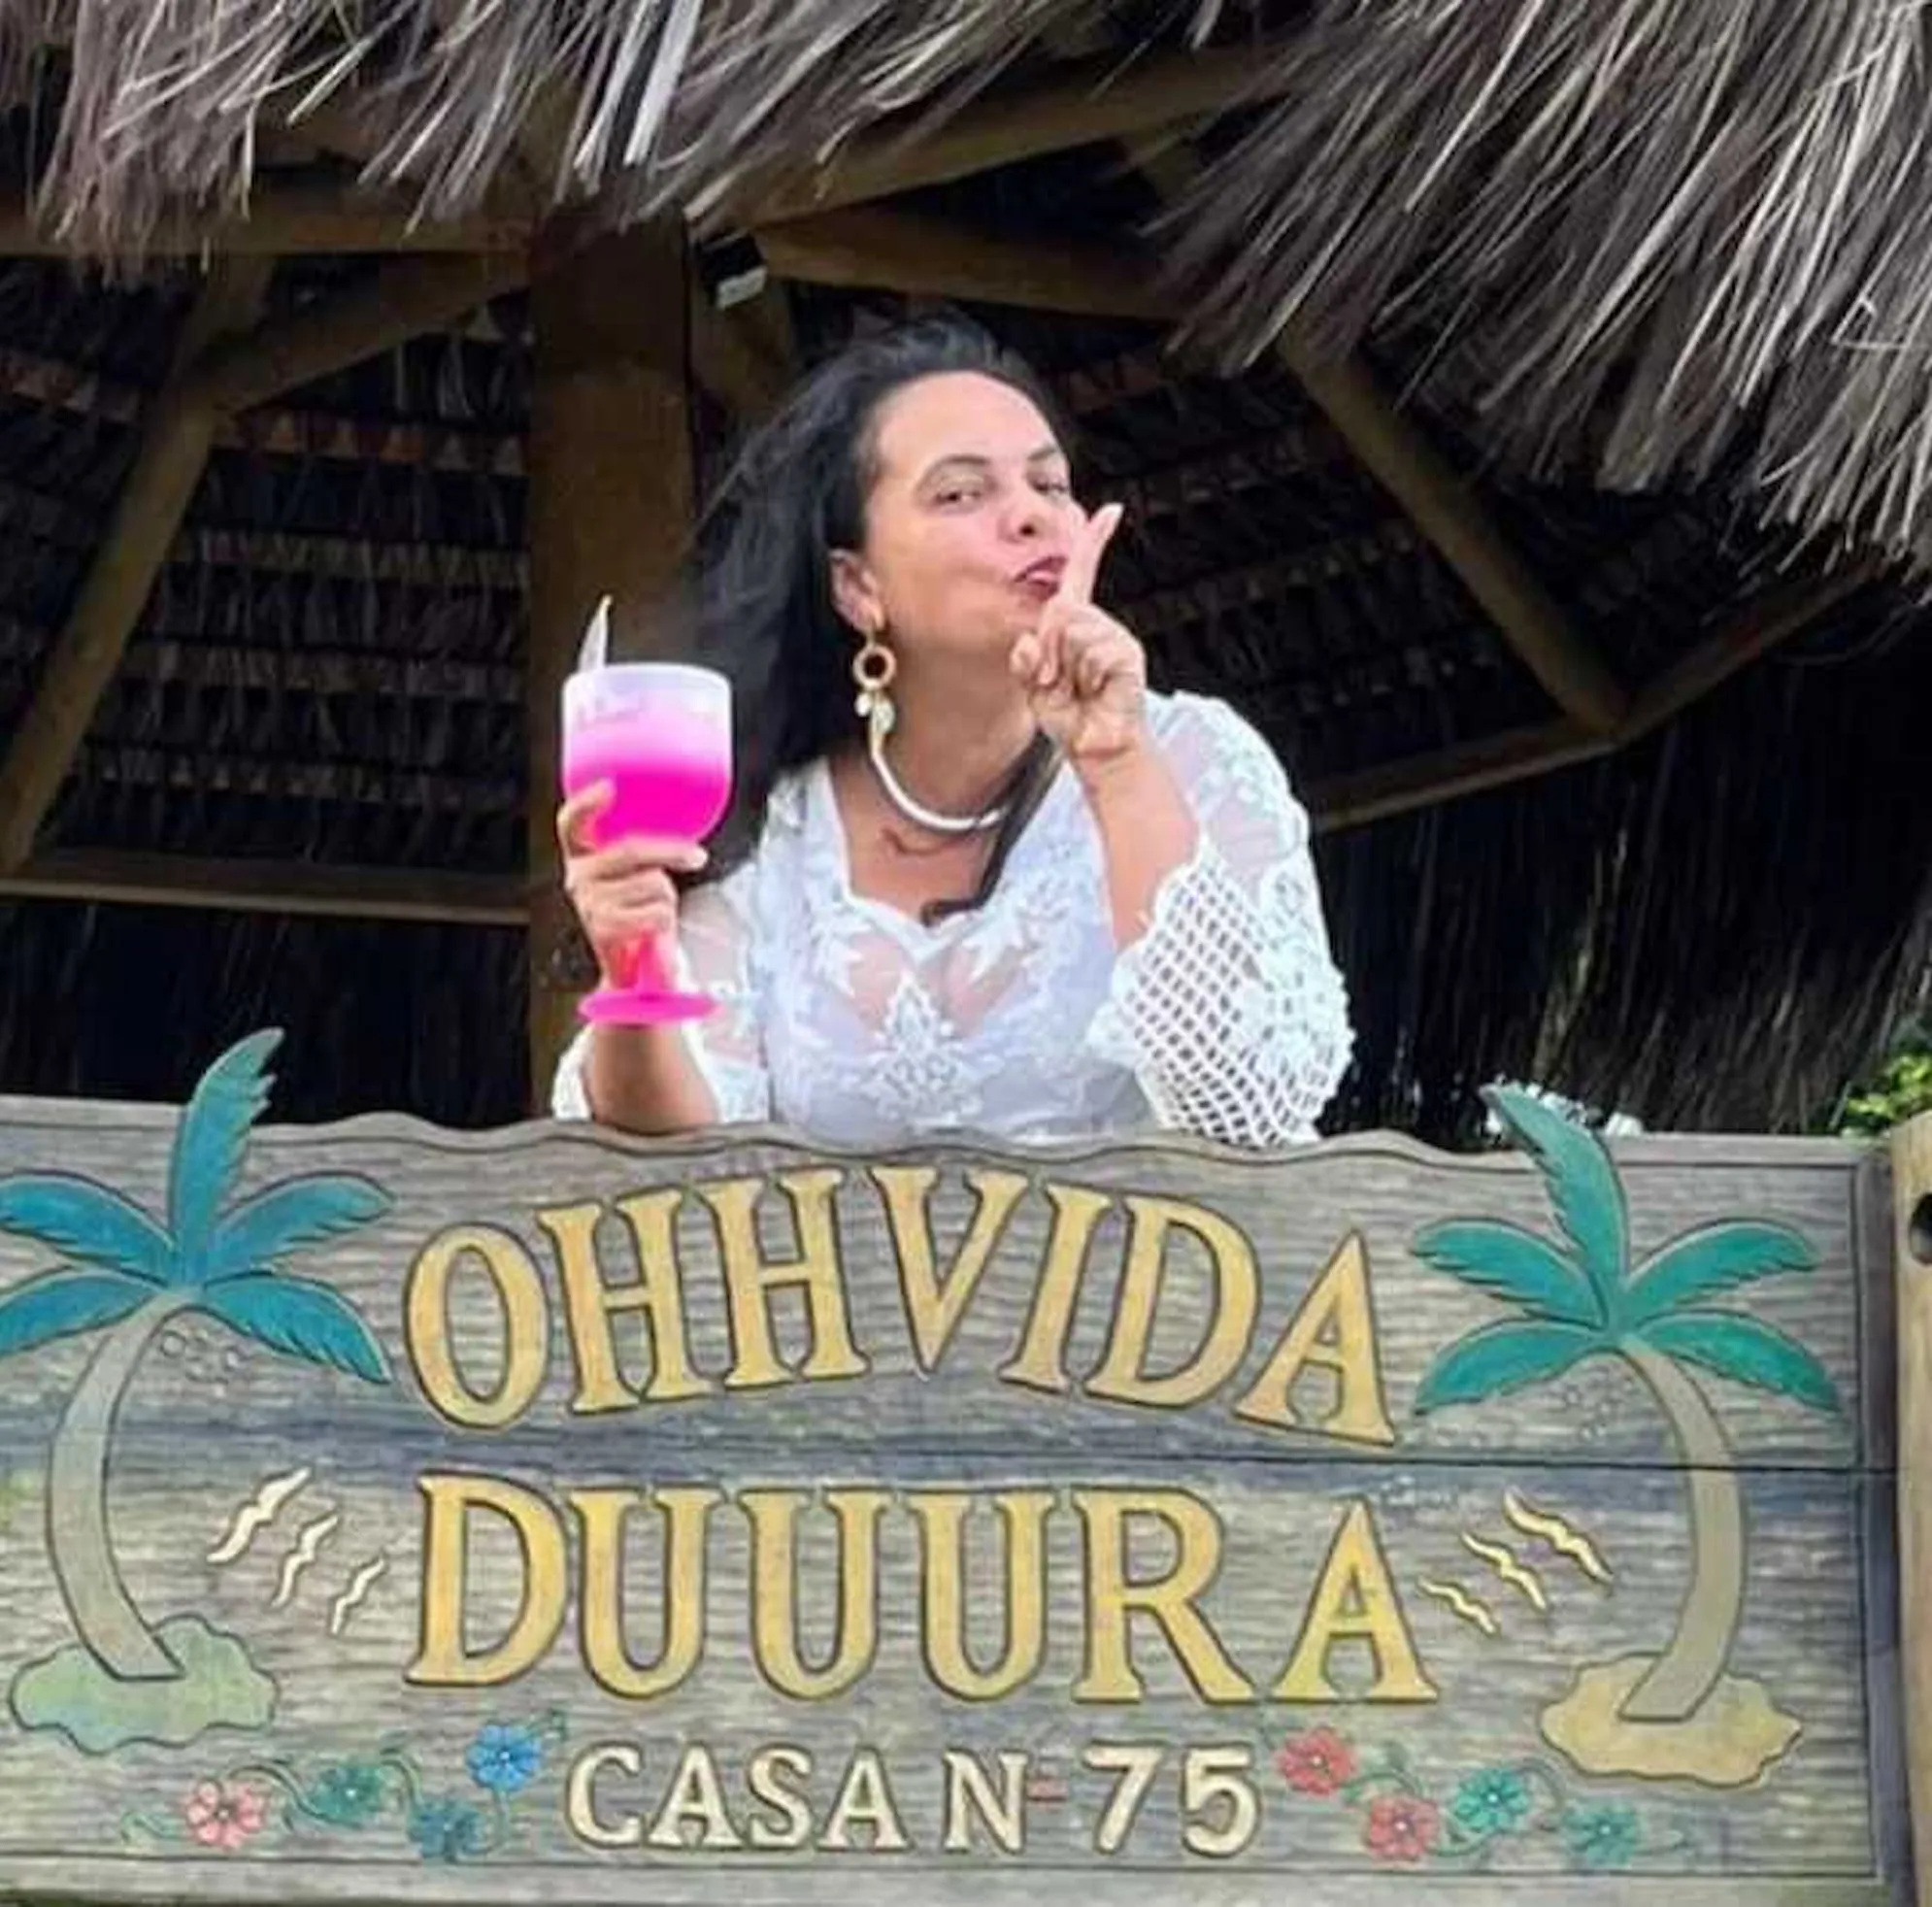 Priscilla trabalha um em spa localizado na orla da praia do Guaraú